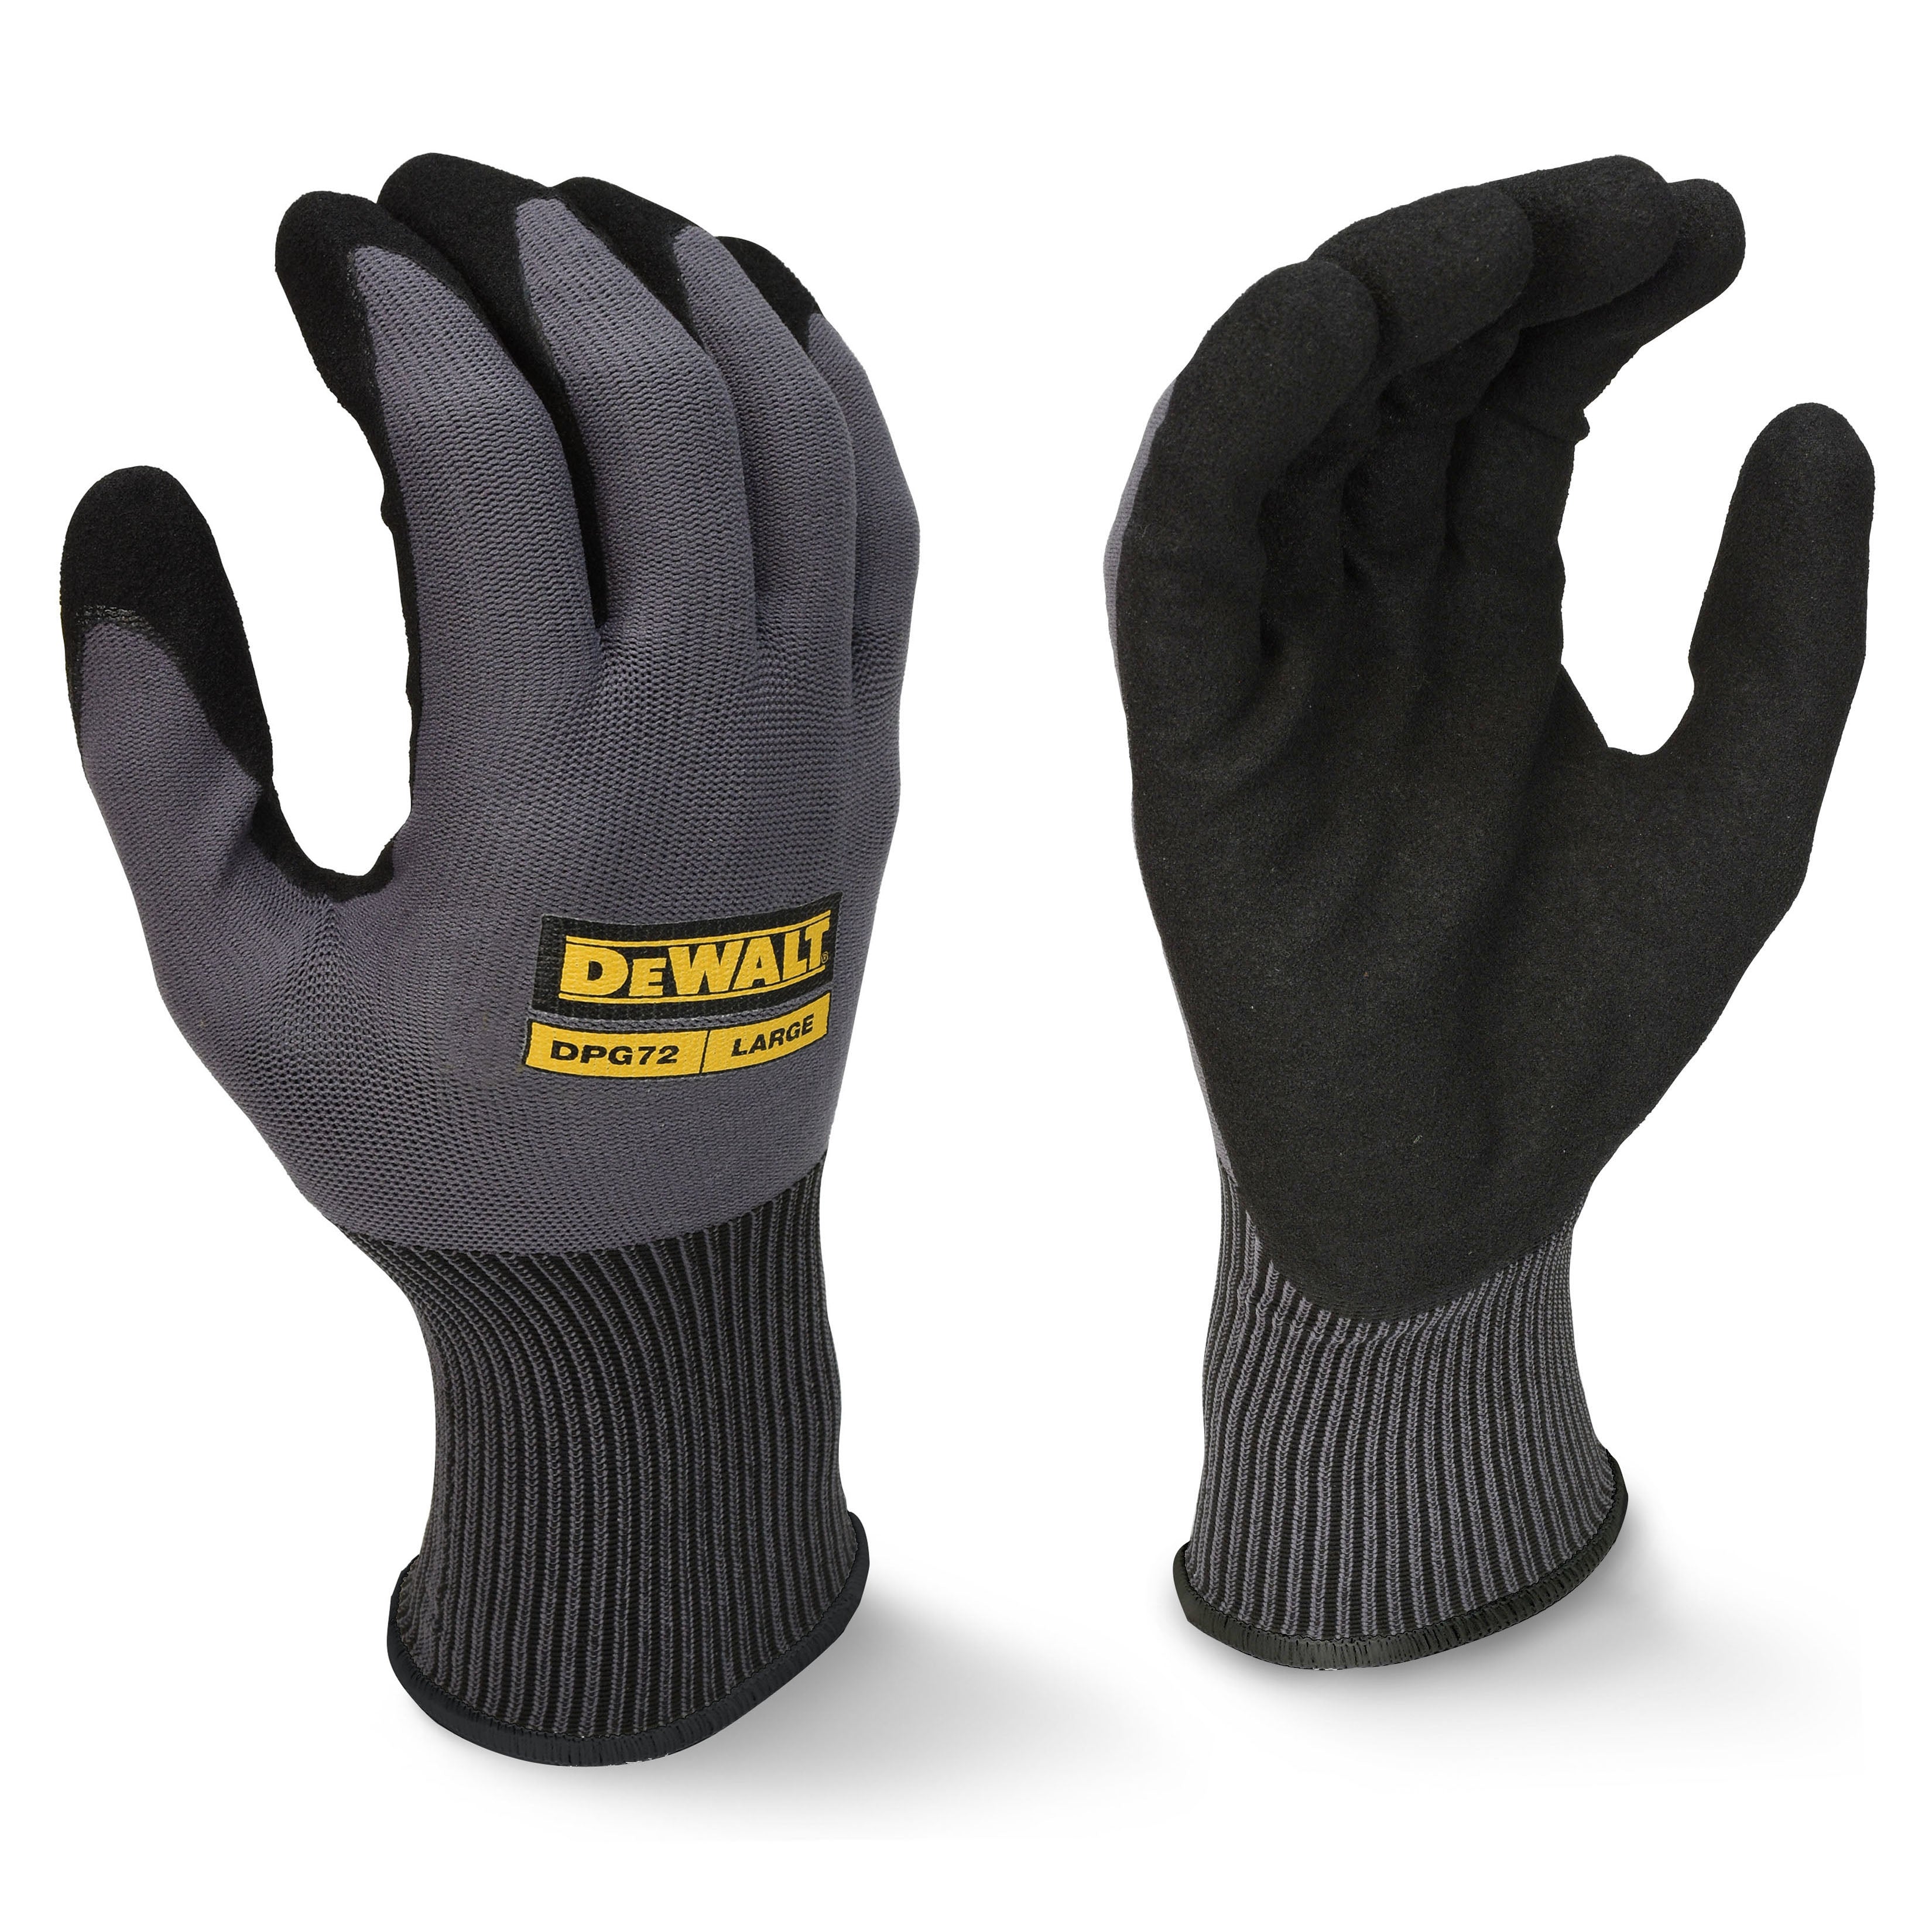 DEWALT DPG72T Flexible Durable Grip Work Glove-eSafety Supplies, Inc